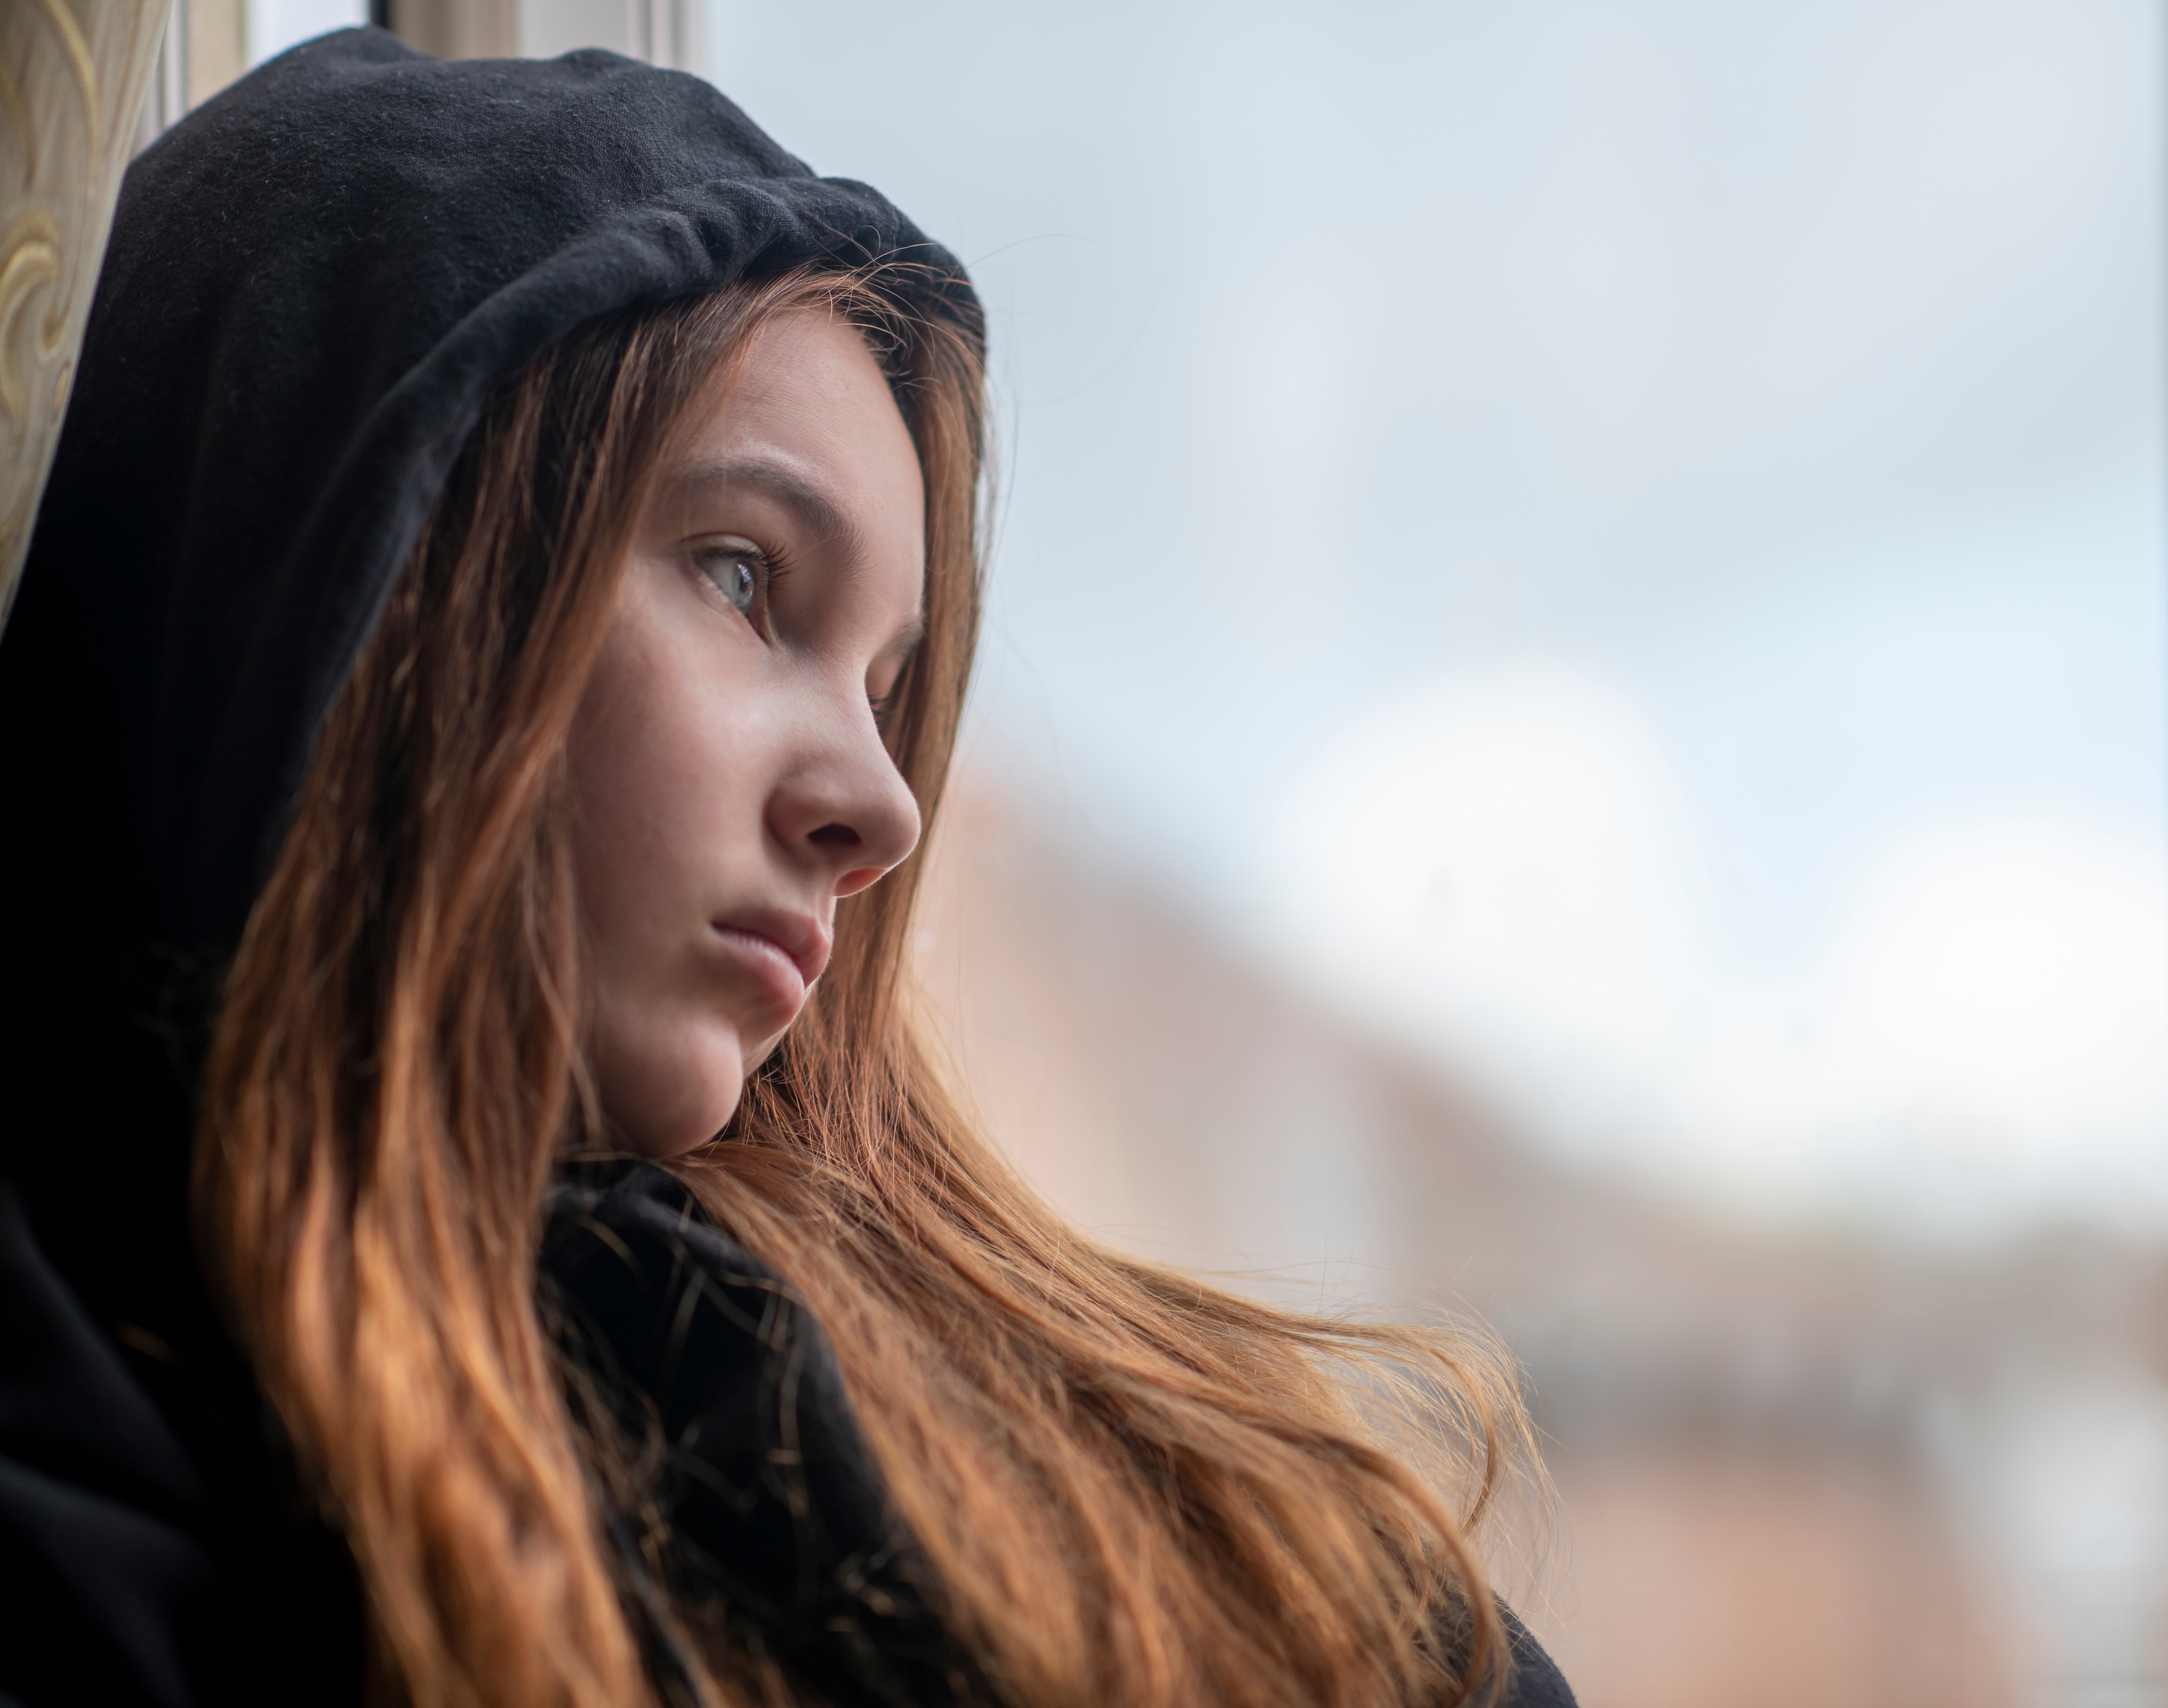 A sad teen girl standing near a window | Source: Shutterstock